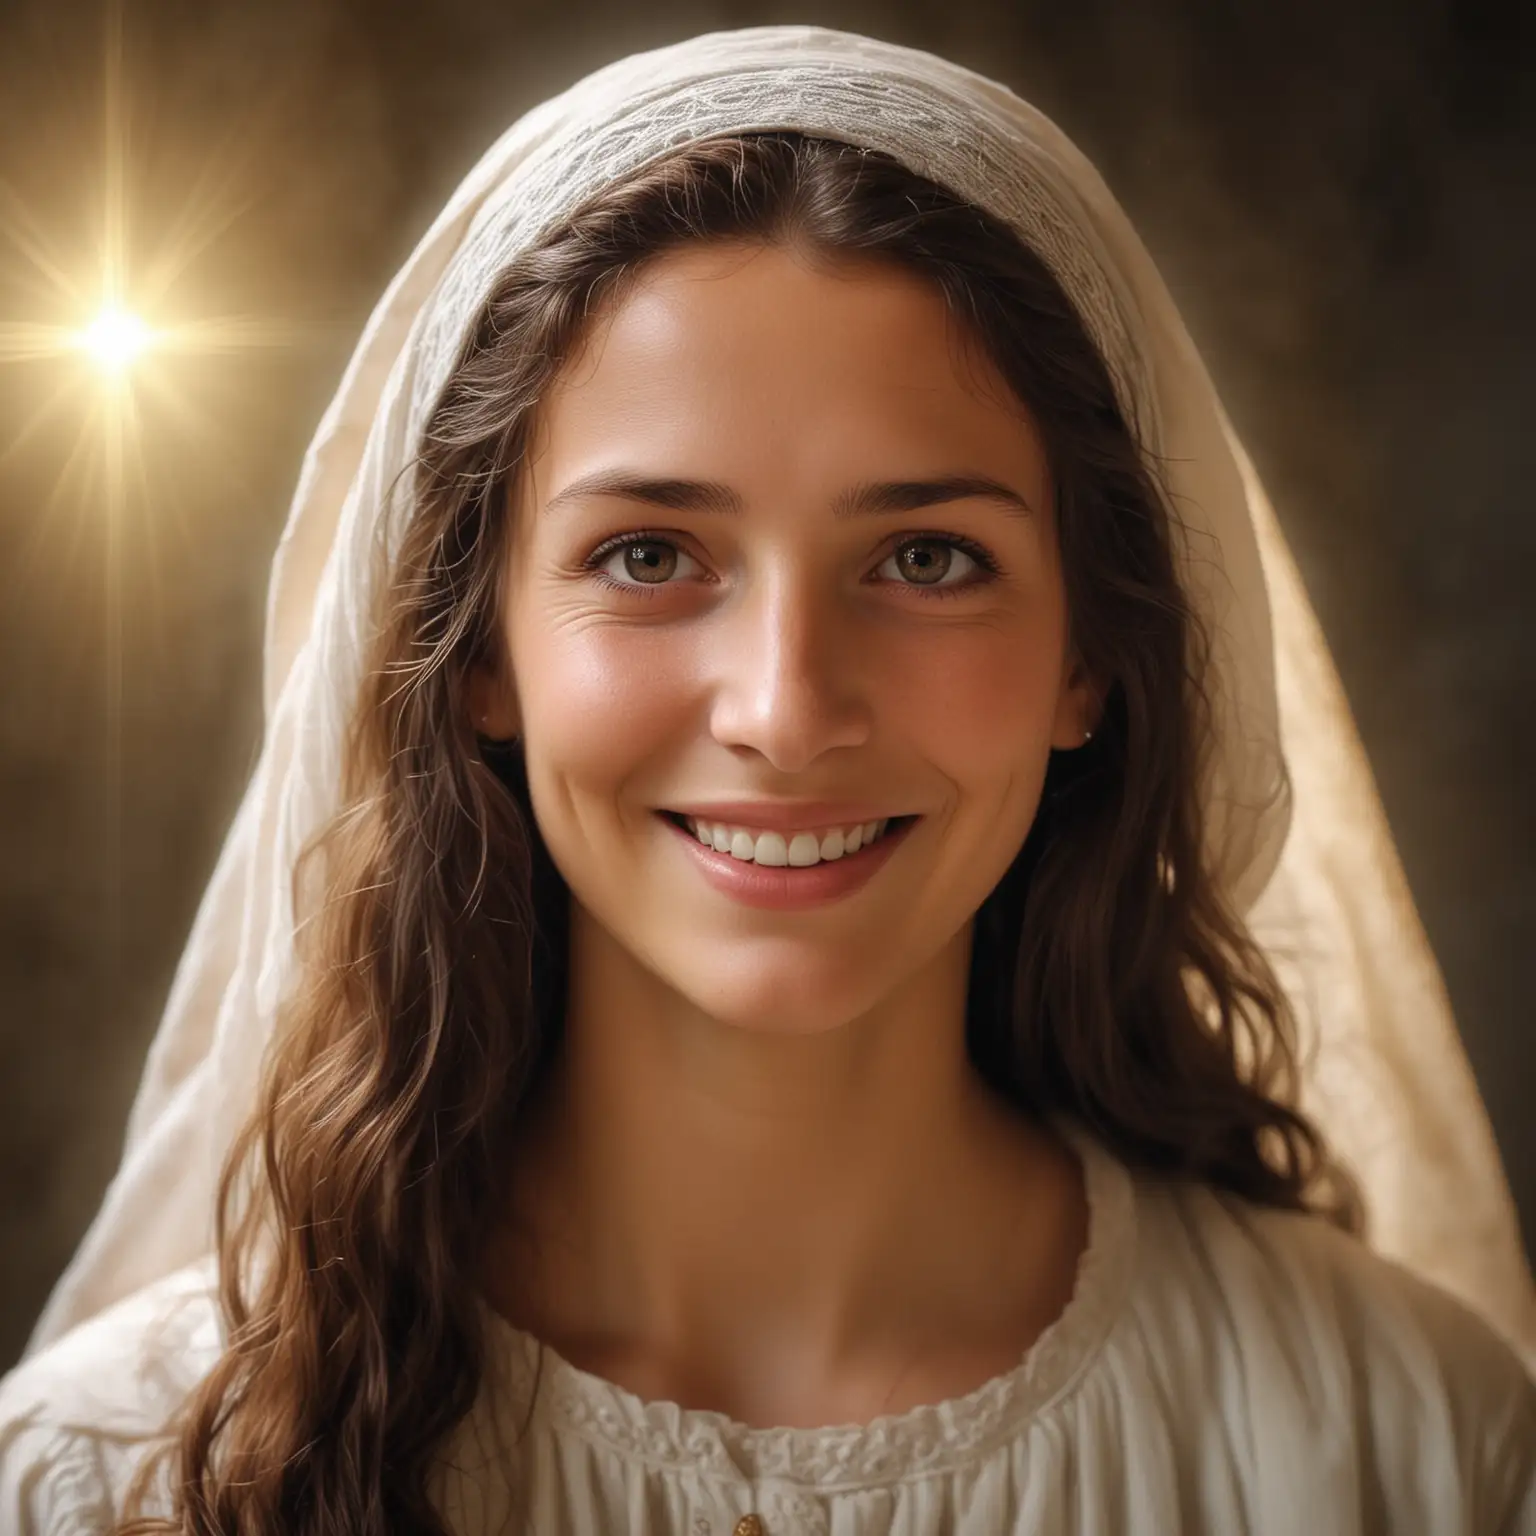 Marie de magdala, souriante, les yeux plein de bienveillance. Elle rayonne de lumière. Jésus est dans son coeur. 